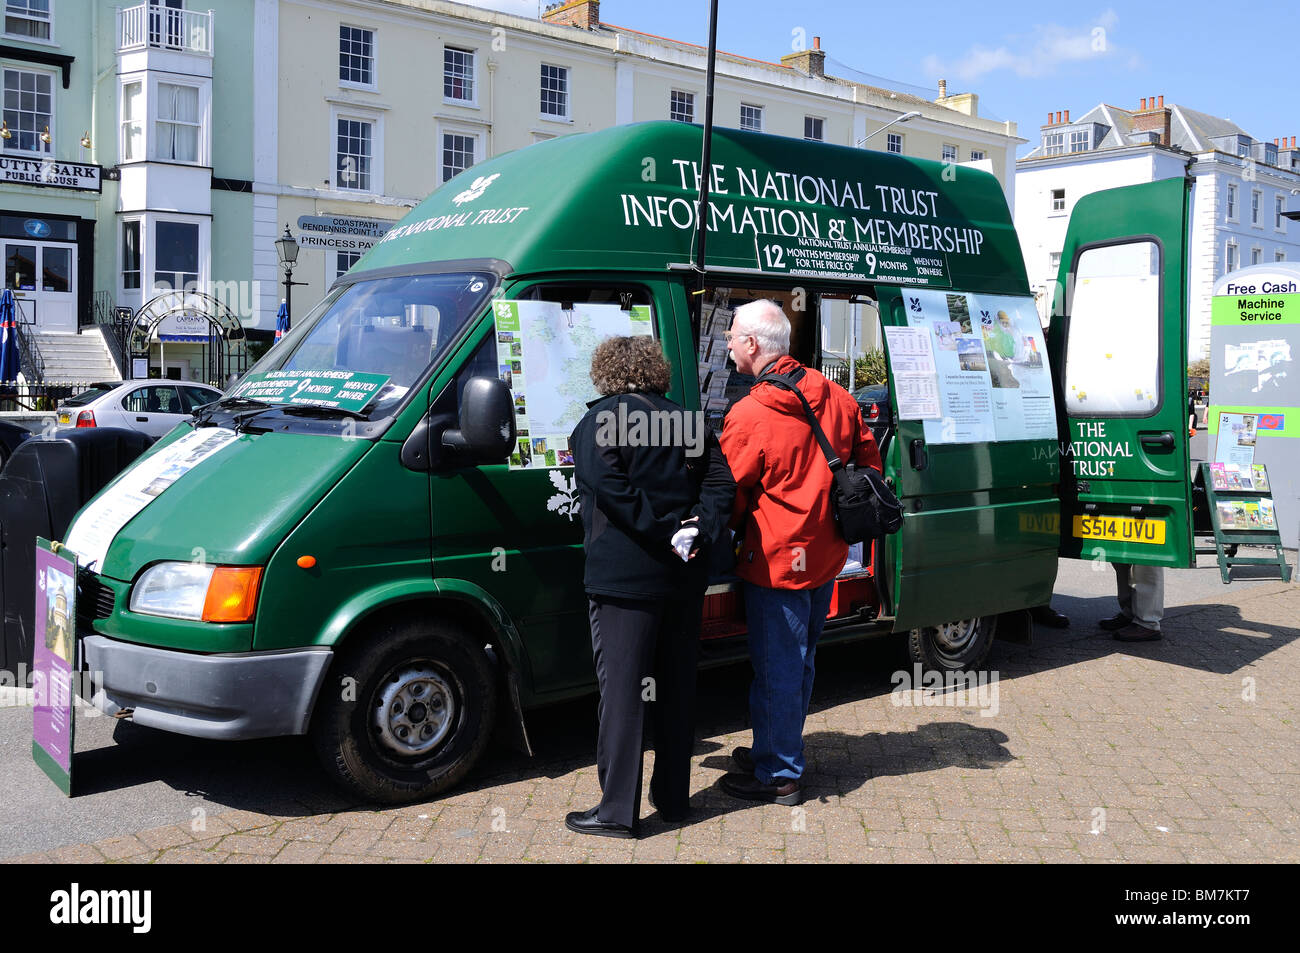 ein Mann und eine Frau auf der Suche zu verbinden Informationen über ein nationales Vertrauen Vertrieb van in Falmouth, Cornwall, uk Stockfoto